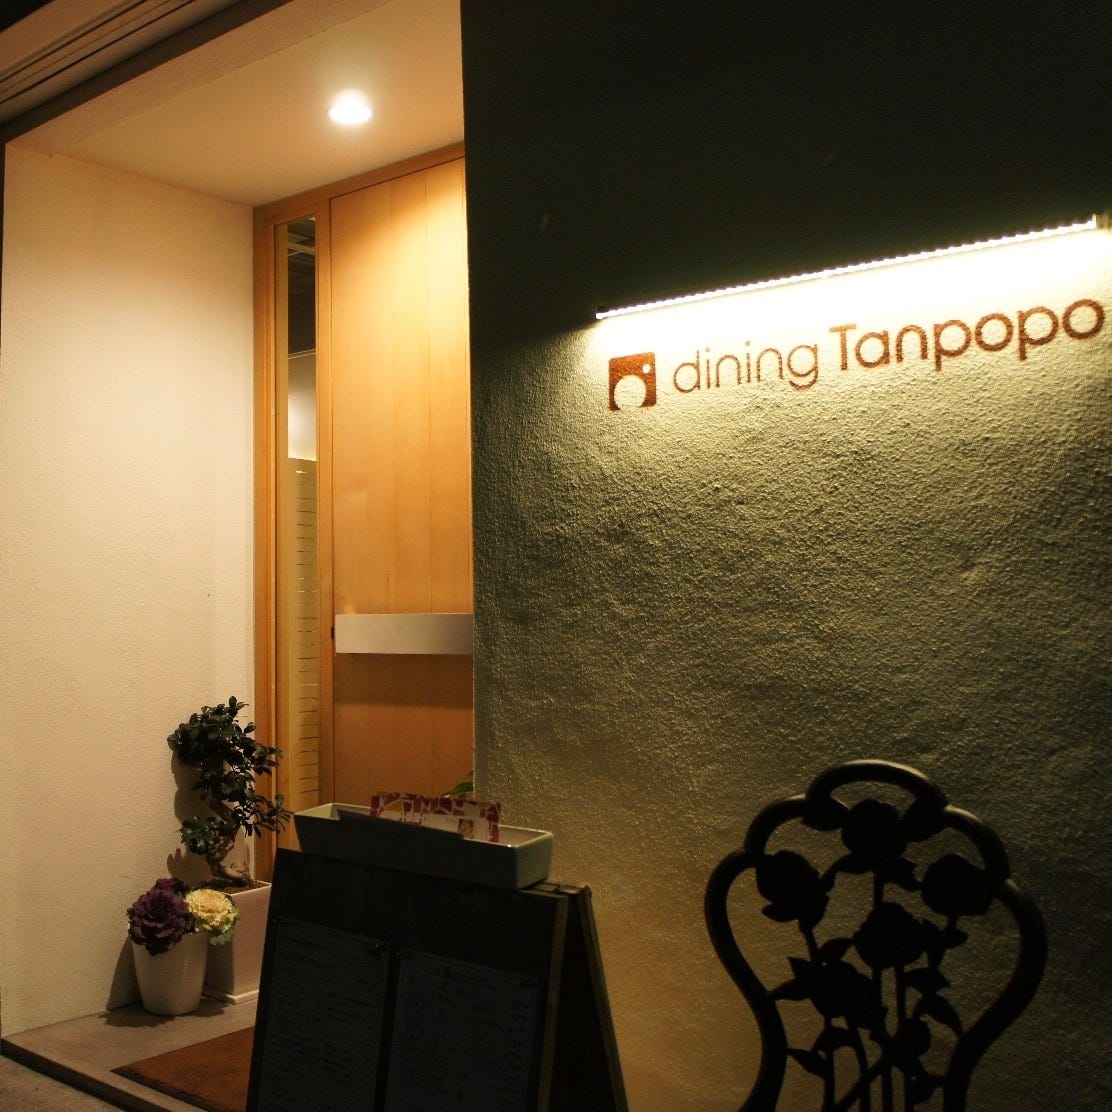 dining Tanpopo(ダイニングタンポポ) image